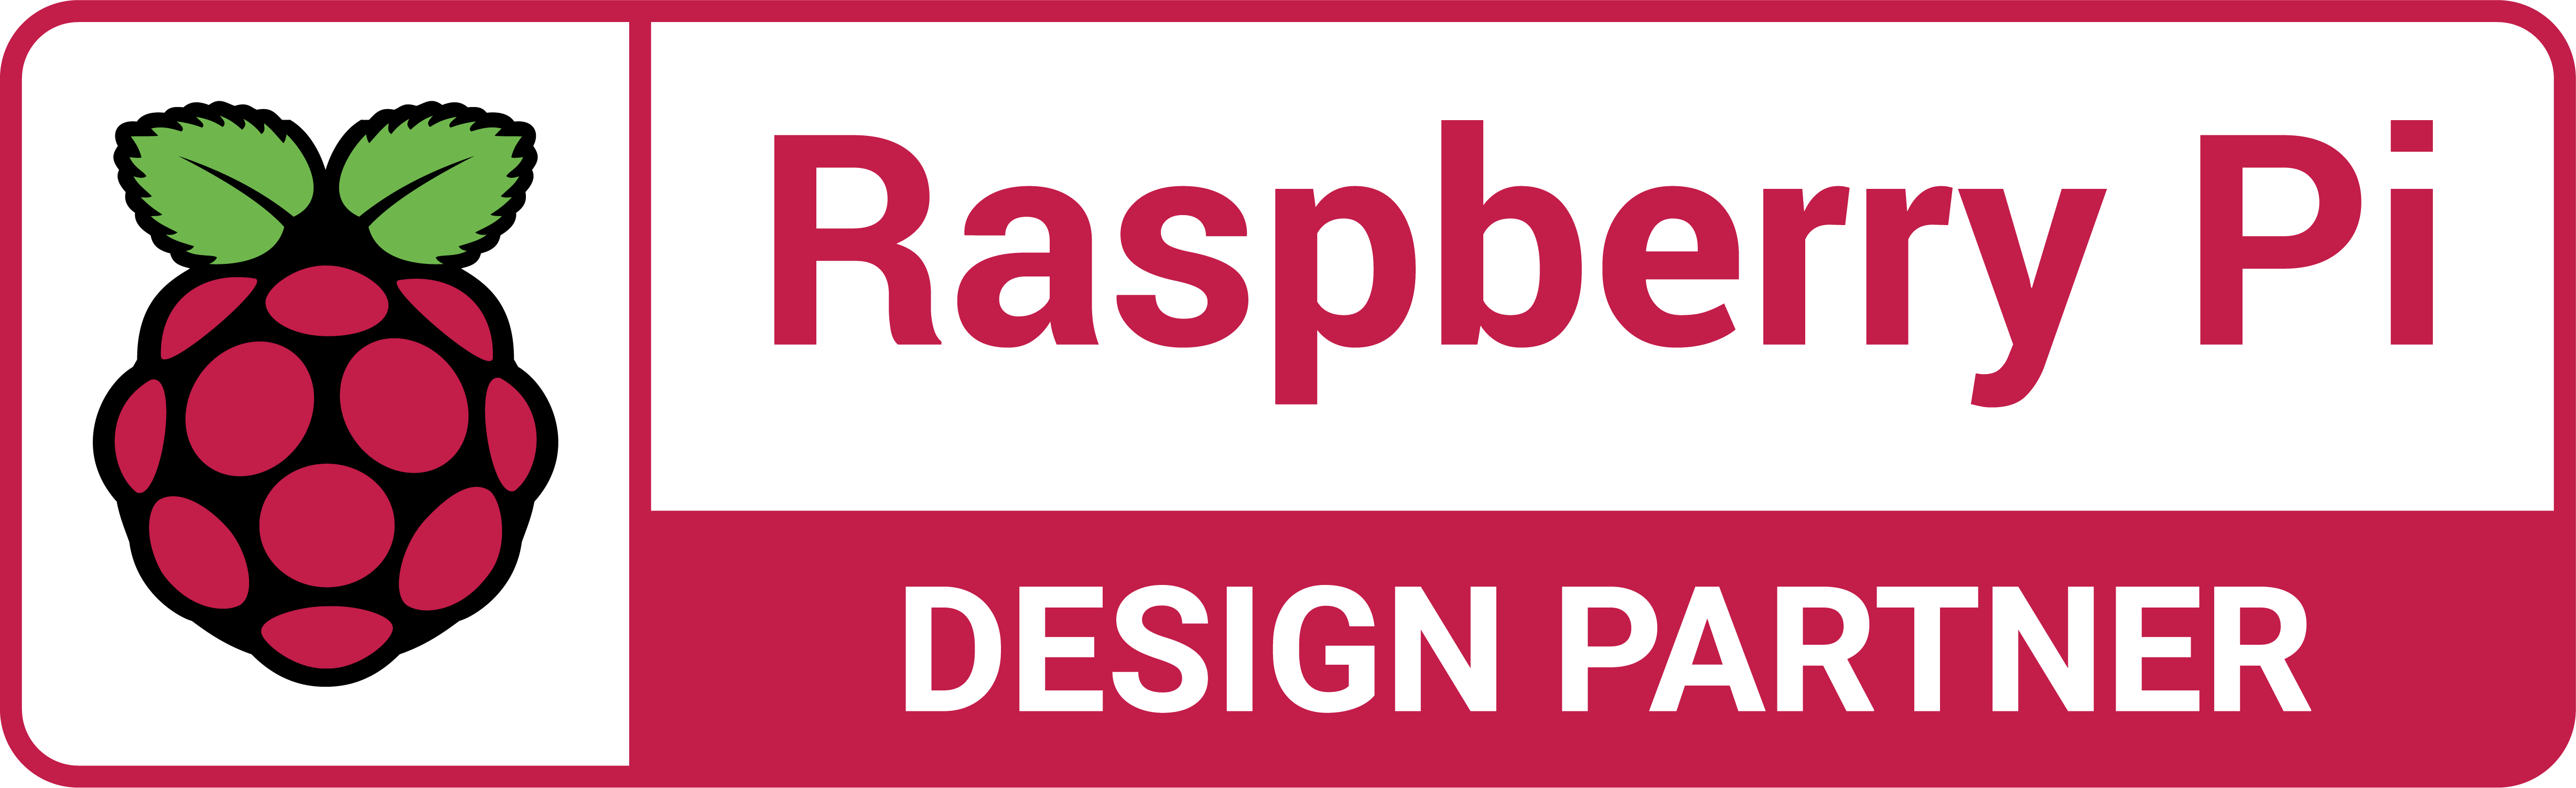 Approved Design Partner Raspberry Pi